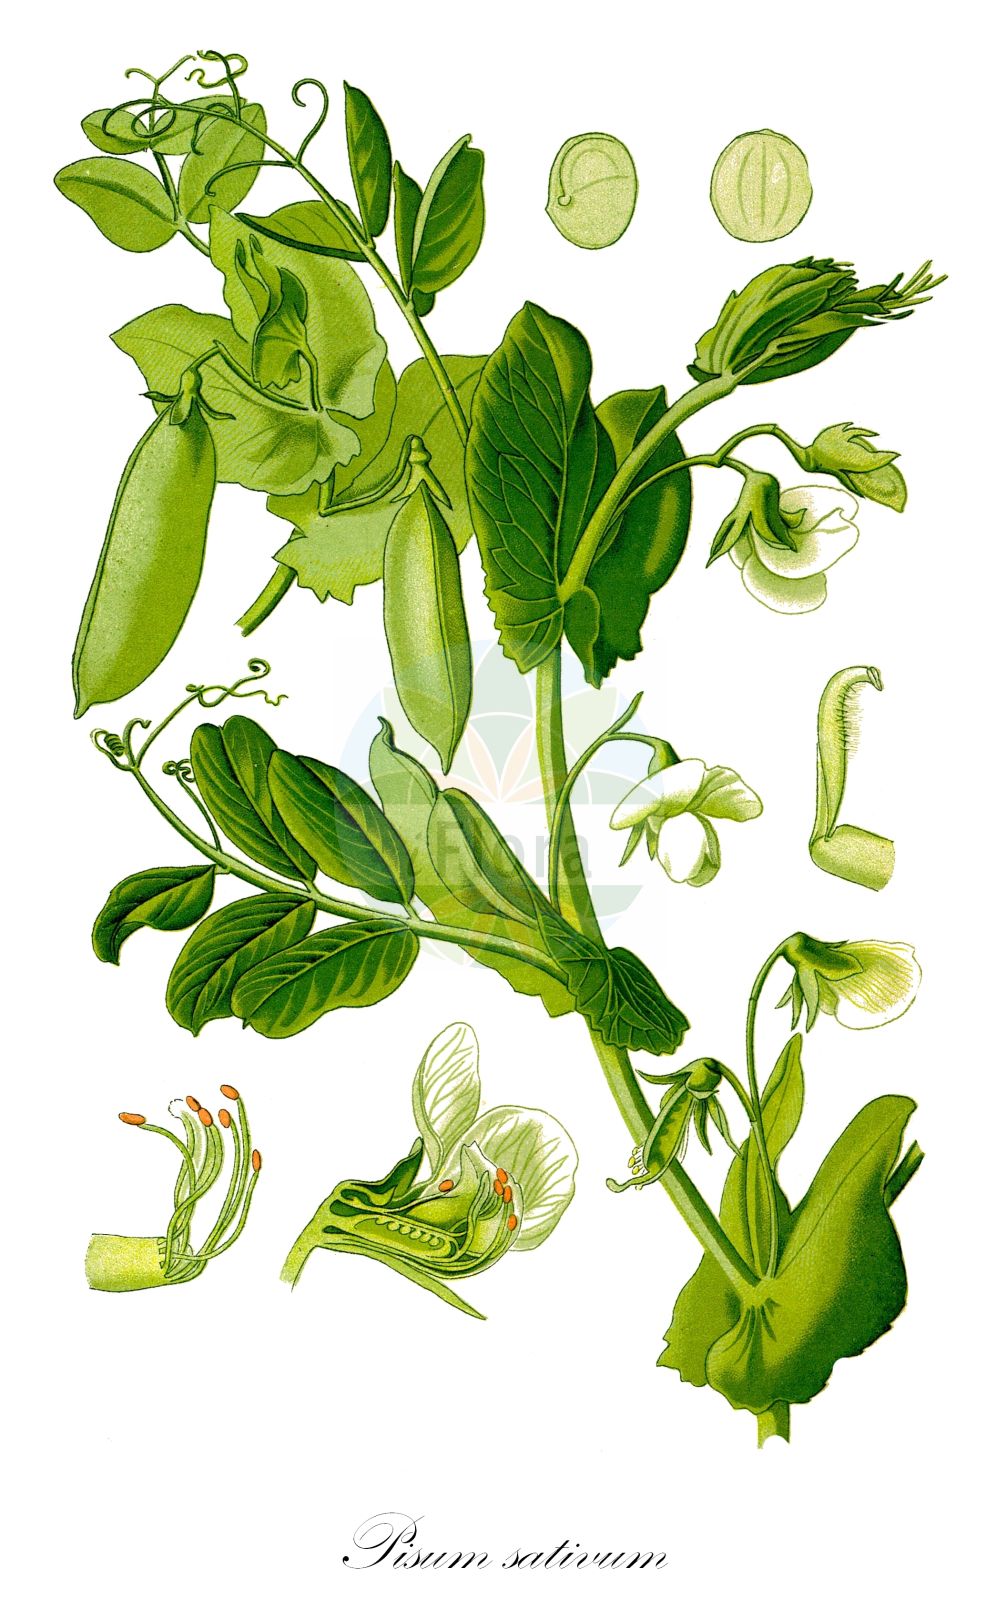 Historische Abbildung von Pisum sativum (Gewöhnliche Erbse - Garden Pea). Das Bild zeigt Blatt, Bluete, Frucht und Same. ---- Historical Drawing of Pisum sativum (Gewöhnliche Erbse - Garden Pea). The image is showing leaf, flower, fruit and seed.(Pisum sativum,Gewöhnliche Erbse,Garden Pea,Lathyrus oleraceus,Pisum sativum,Pisum vulgare,Gewoehnliche Erbse,Garden Pea,Pea,English Pea,Green Pea,Round-seeded Pea,Shelling Pea,Snap Pea,Snow Pea,Pisum,Erbse,Pea,Fabaceae,Schmetterlingsblütler,Pea family,Blatt,Bluete,Frucht,Same,leaf,flower,fruit,seed,Thomé (1885))